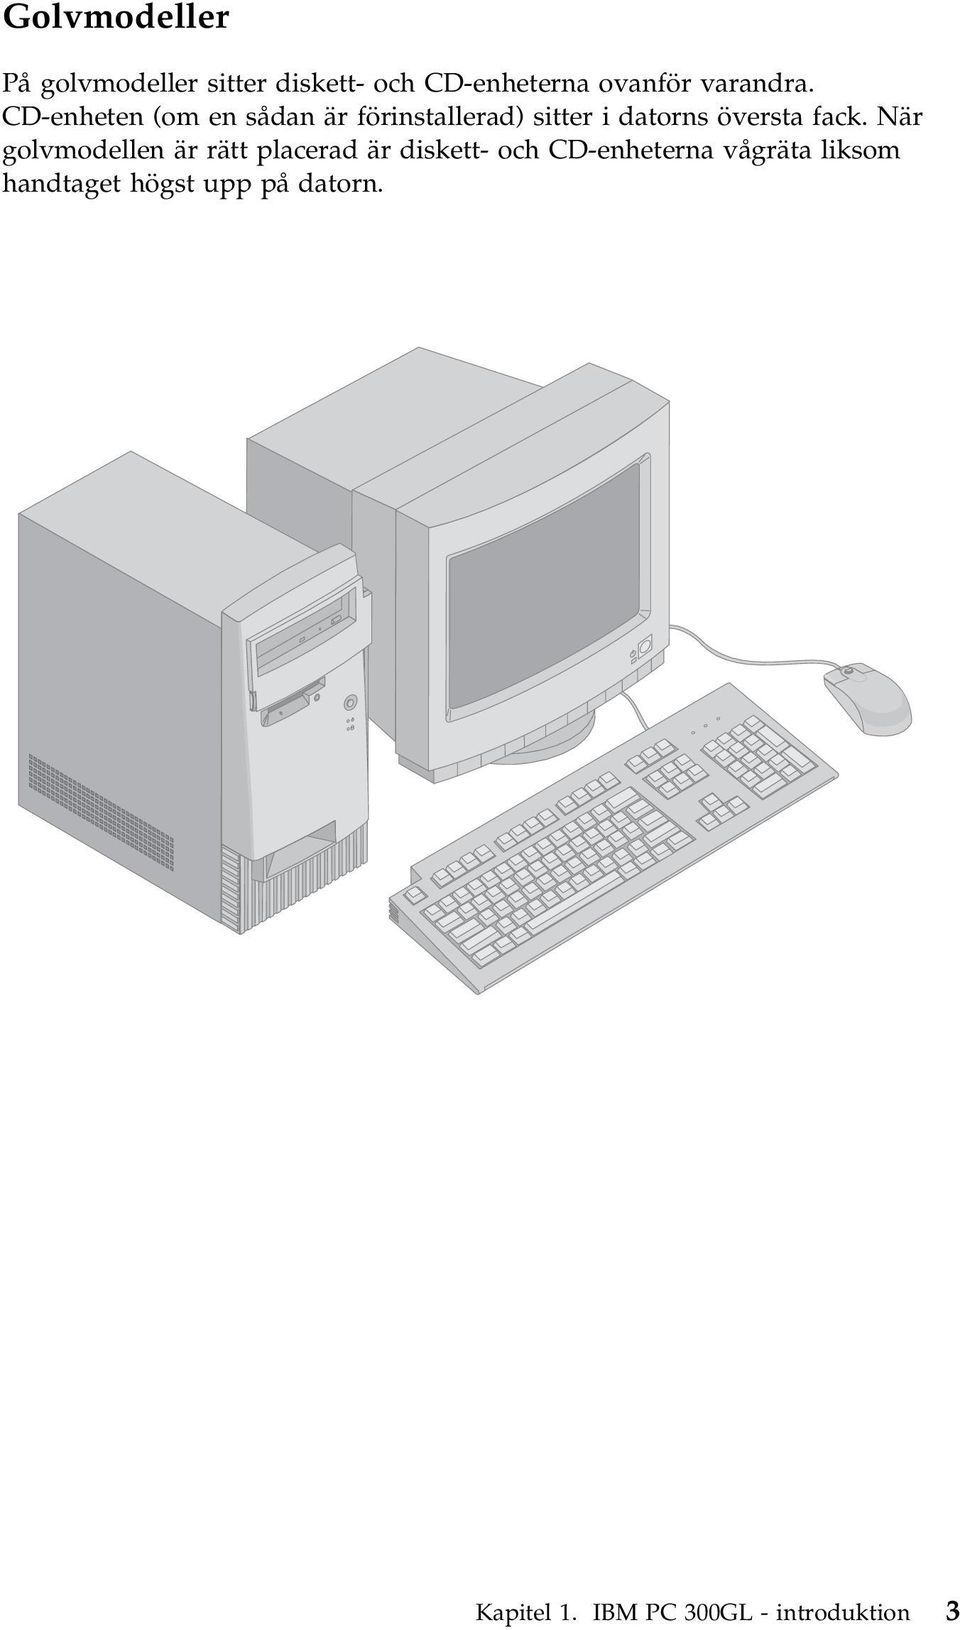 CD-enheten (om en sådan är förinstallerad) sitter i datorns översta fack.